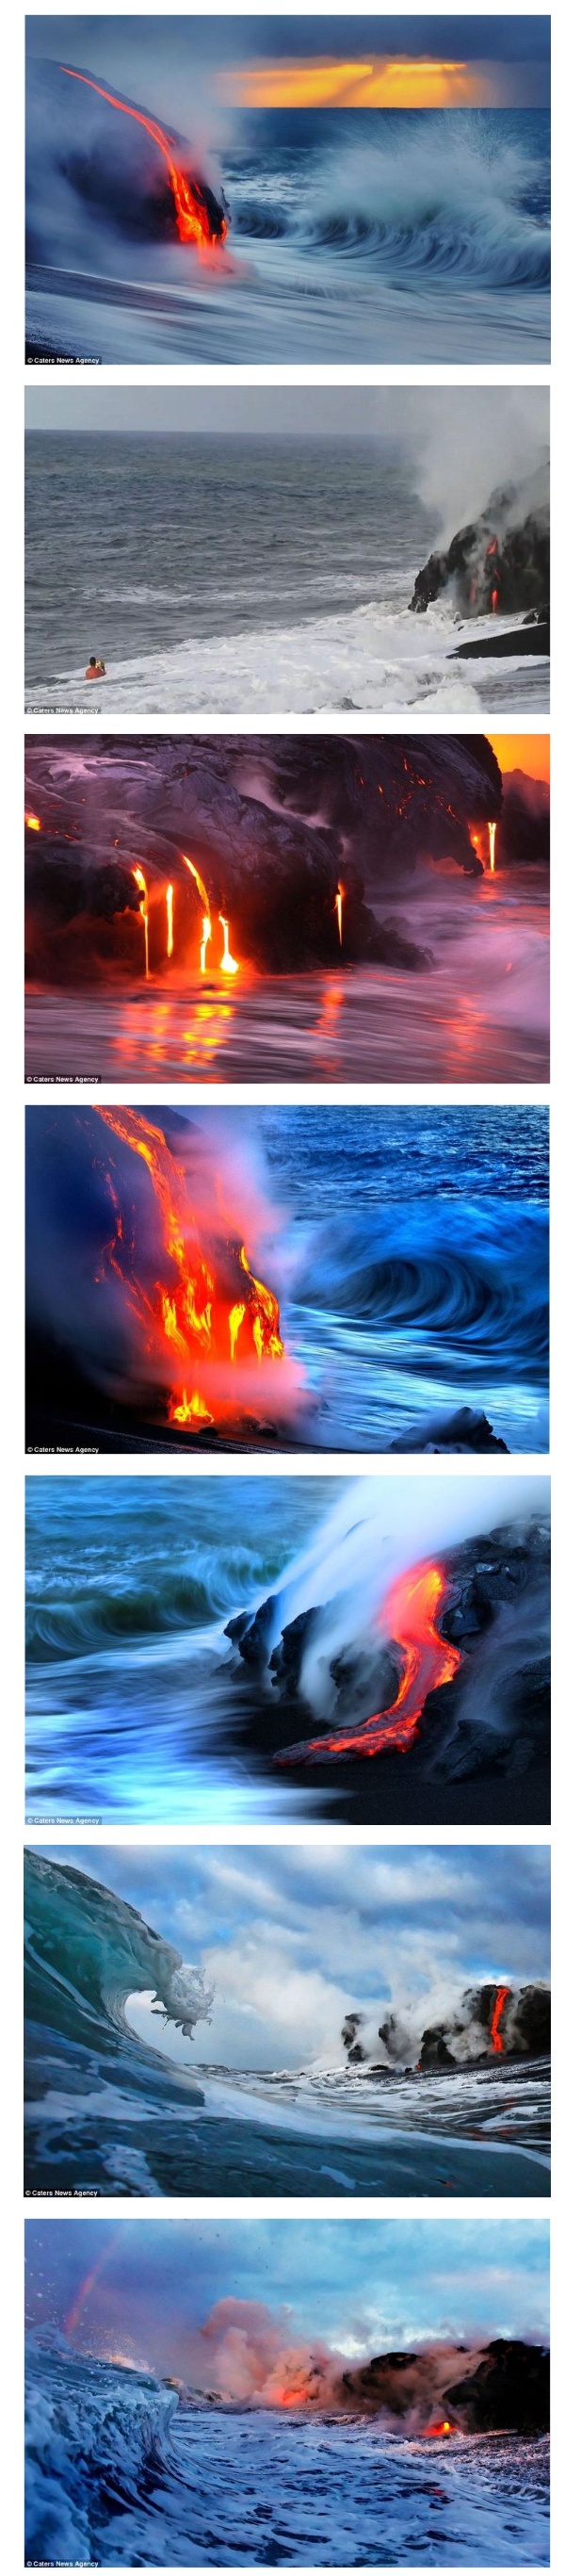 1.jpg : 바다와 용암이 만나는 광경.jpg